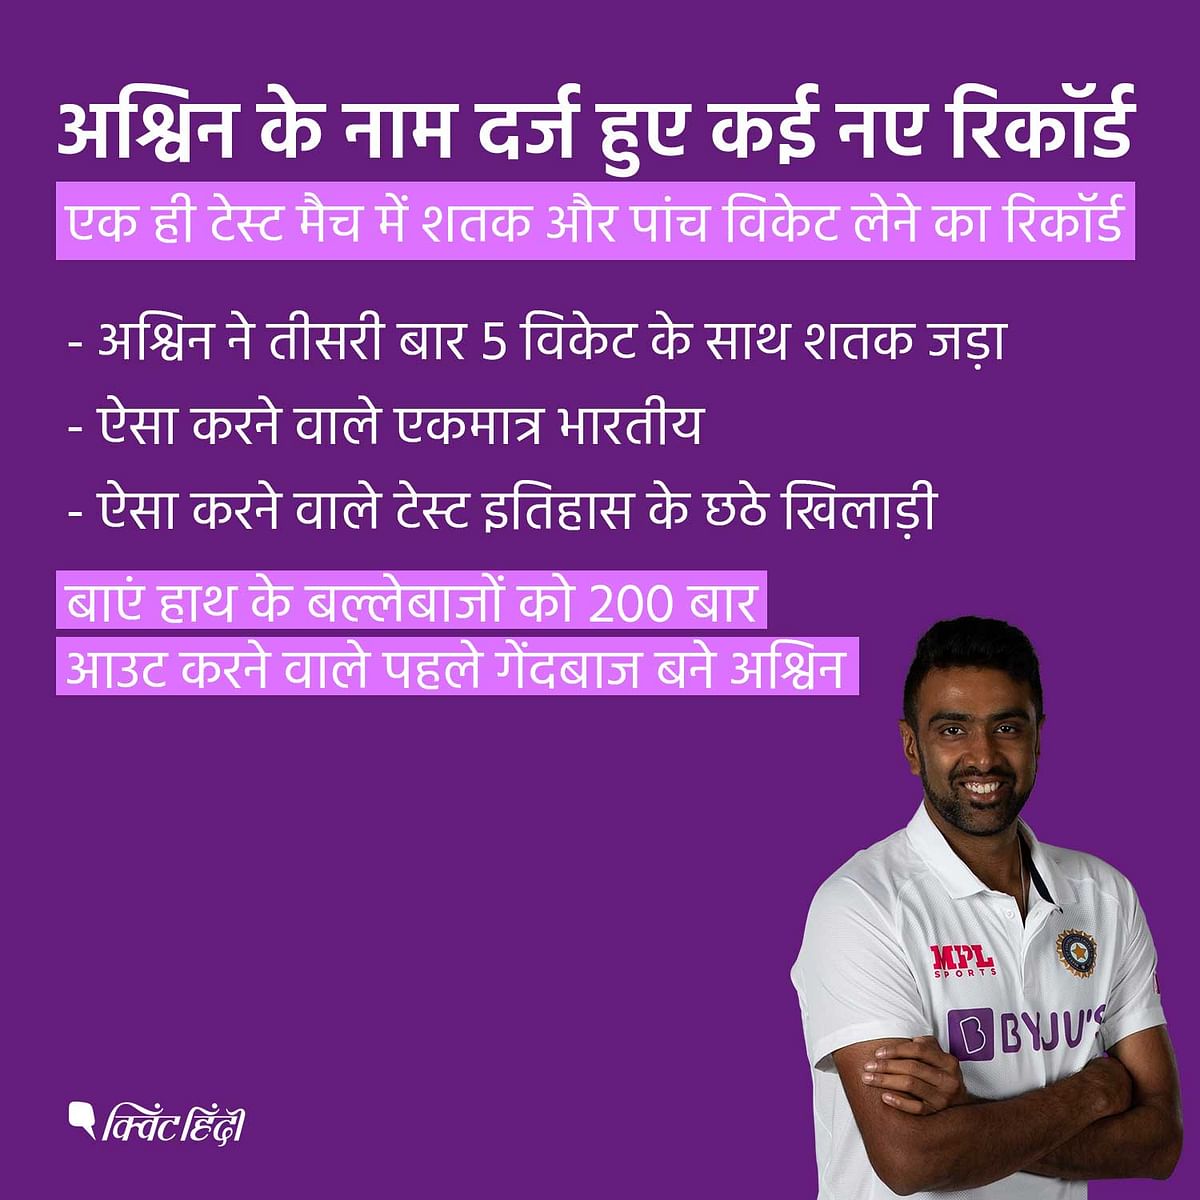  भारतीय स्टार ऑफ स्पिनर रविचंद्रन अश्विन ने टेस्ट क्रिकेट में तीसरी बार पांच विकेट लेने के साथ-साथ शतक भी लगाया है